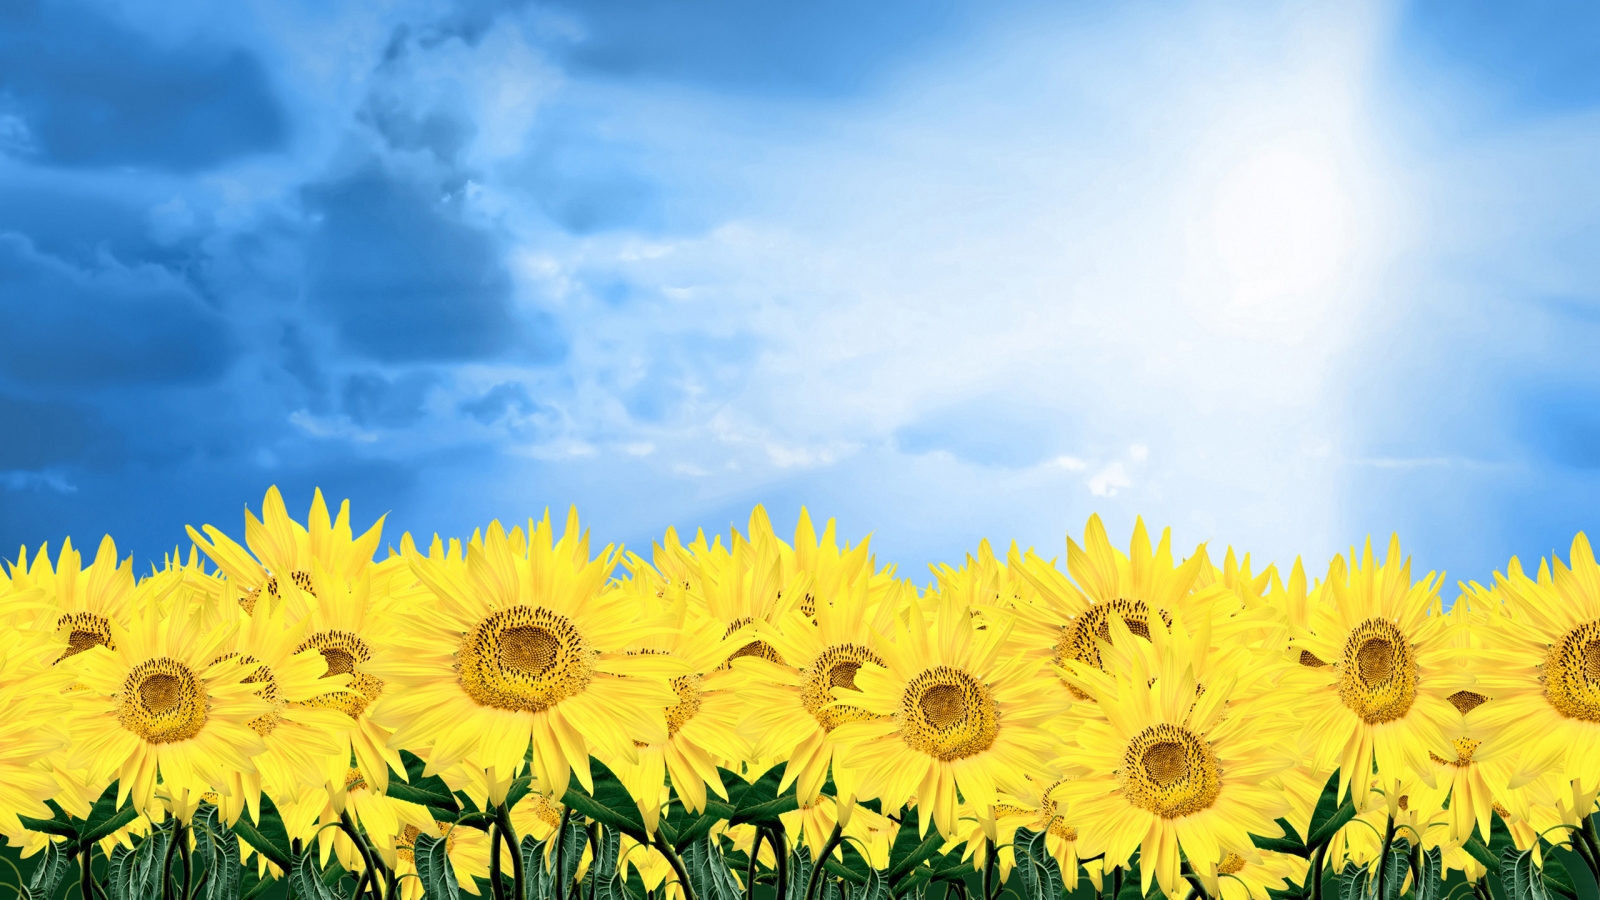 Summer Sunflowers for 1600 x 900 HDTV resolution